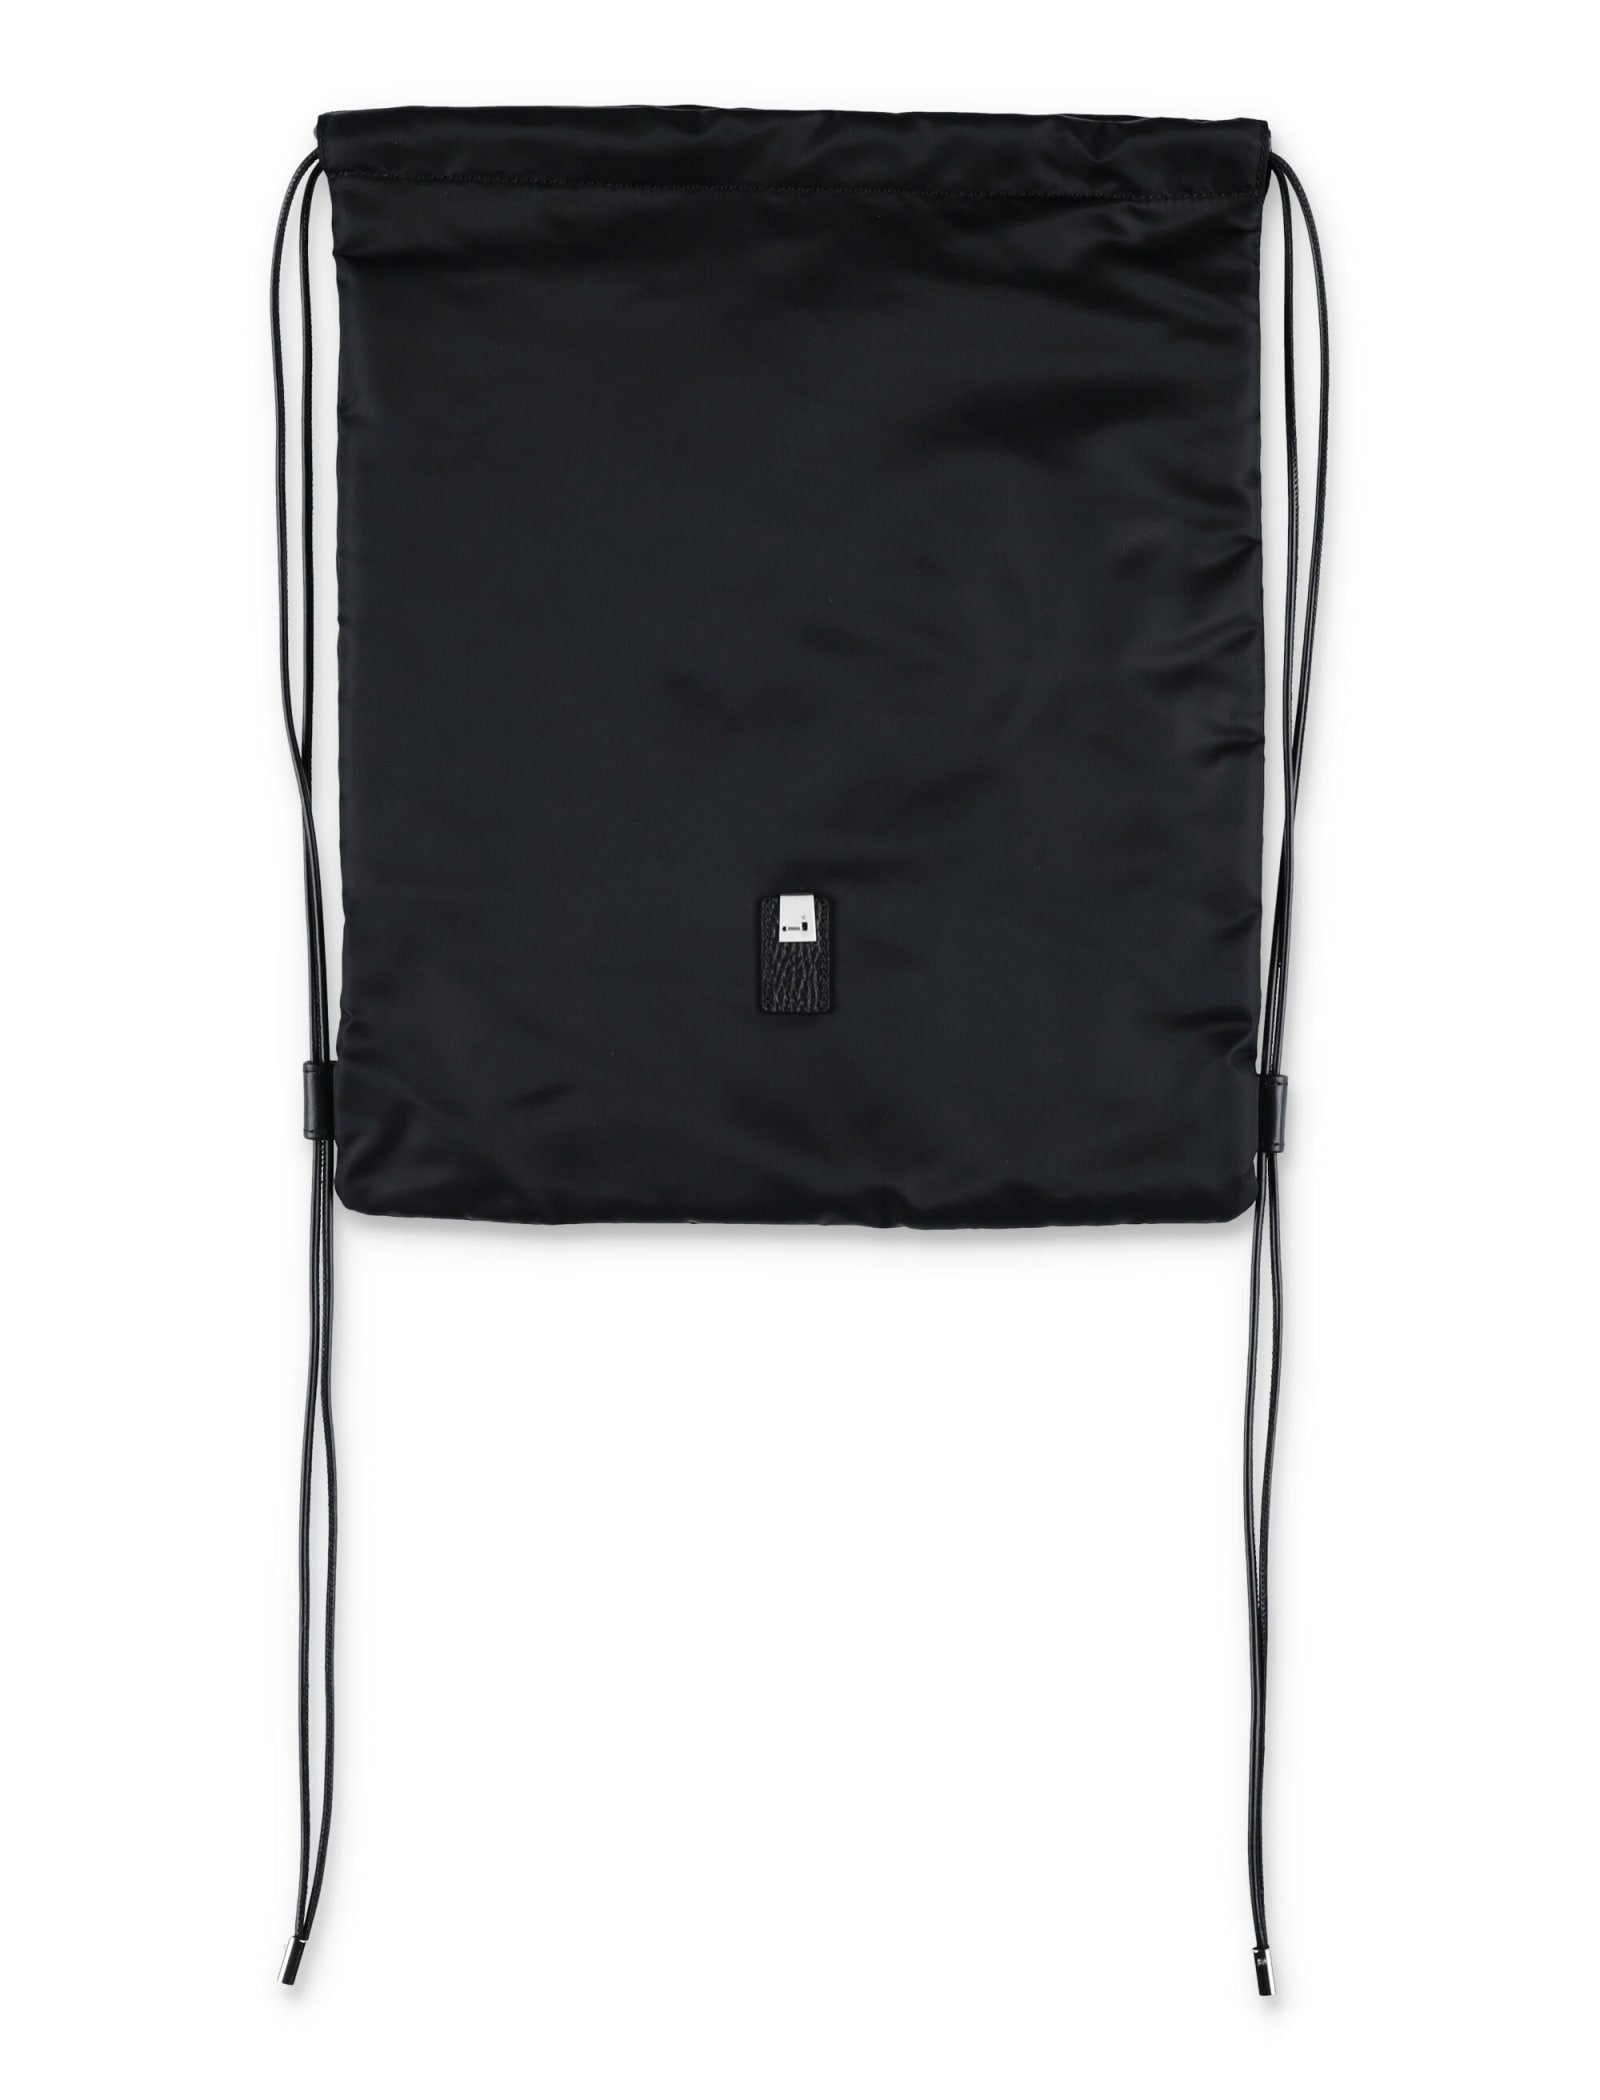 1017 ALYX 9SM Re-nylon Drawstring Backpack